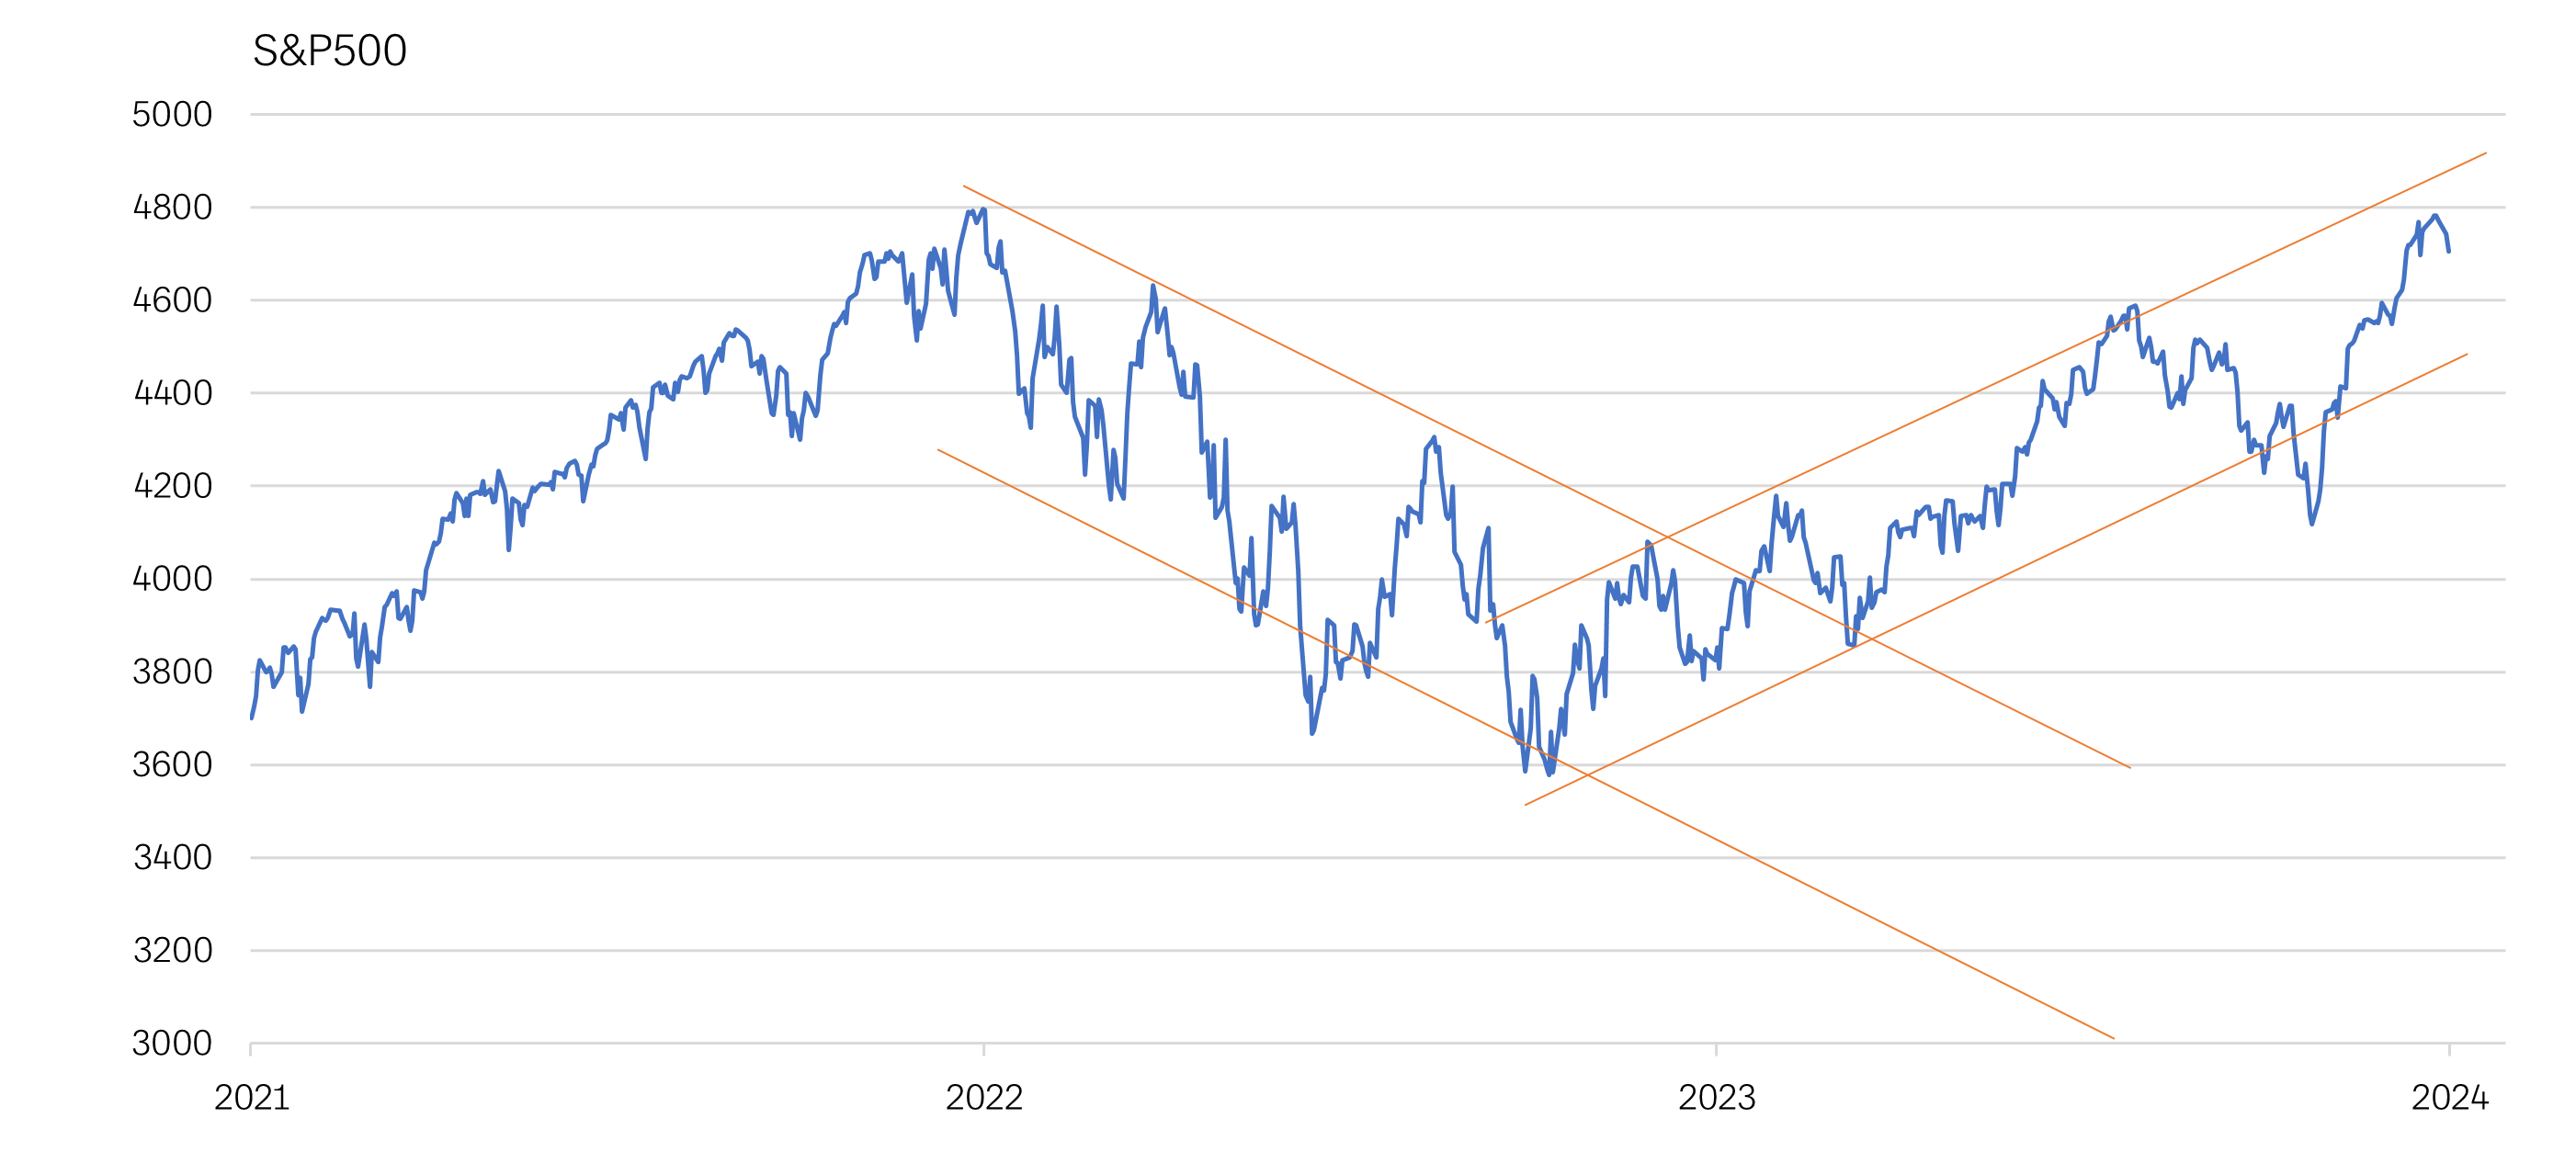 Kuvaaja esittää S&P-500-indeksin kehitystä (pistetasoja) vuodesta 2021 vuoden 2024 alkuun. Vuoden 2022 alusta syksyyn kestäneen laskun jälkeen markkina on ollut nousutrendissä vaikka huojuntaa ylös-alas on esiintynyt.